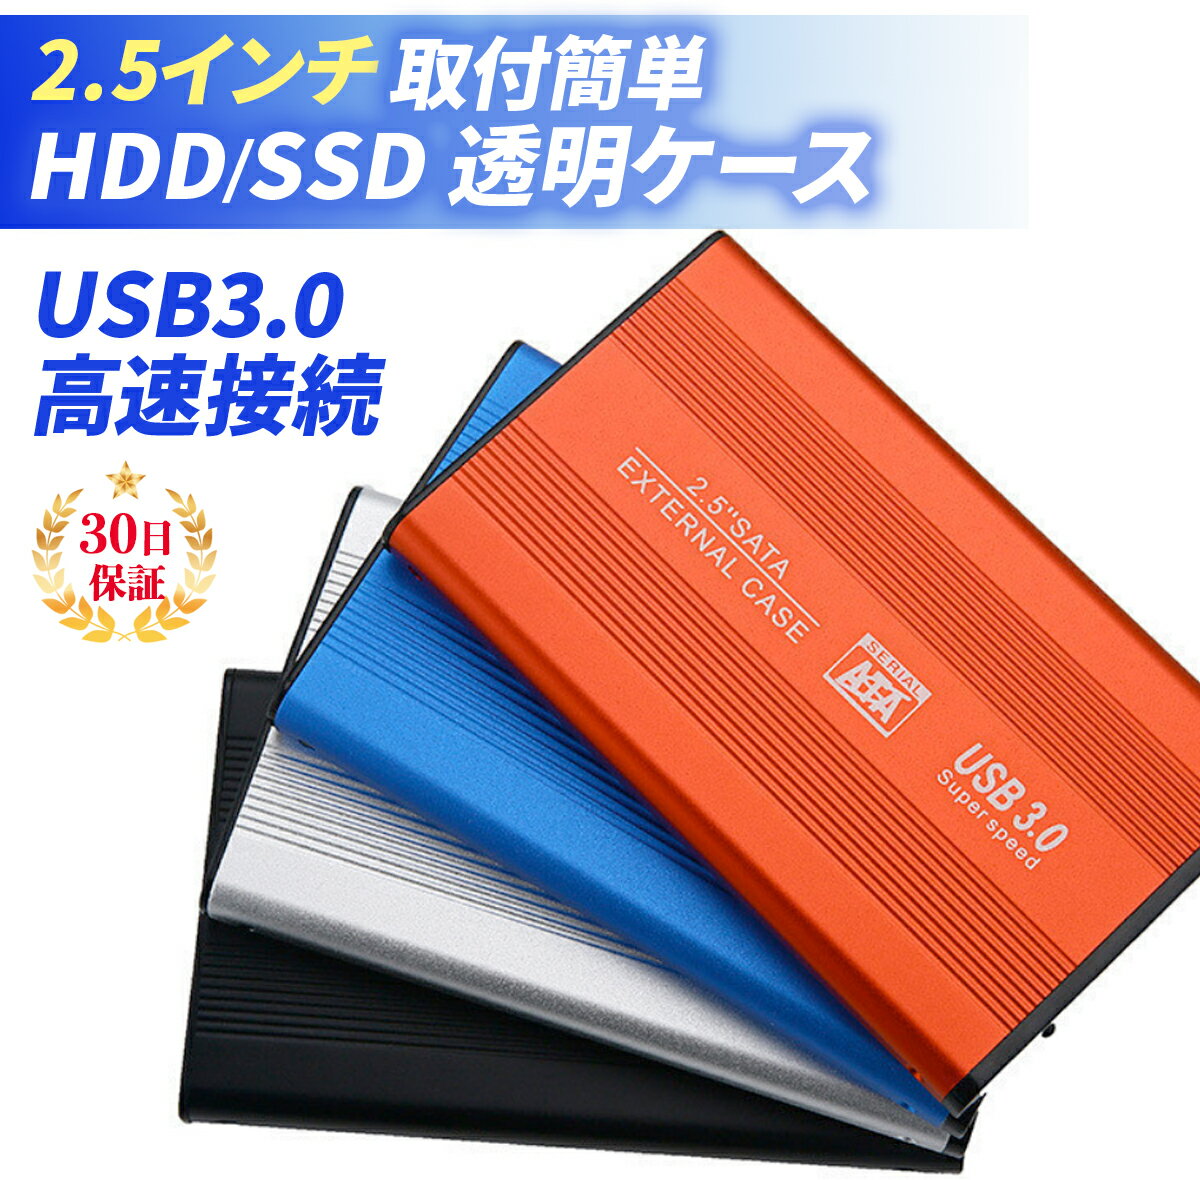 HDDケース 2.5インチ ケース 外付け USB3.0 SSD HDD SATA UASP ポータブル型 ハードディスク ドライブ USB 3.0 軽量 ハードケース SATA接続 軽量 電源不要 アルミ耐久性 レッド ブルー シルバ…